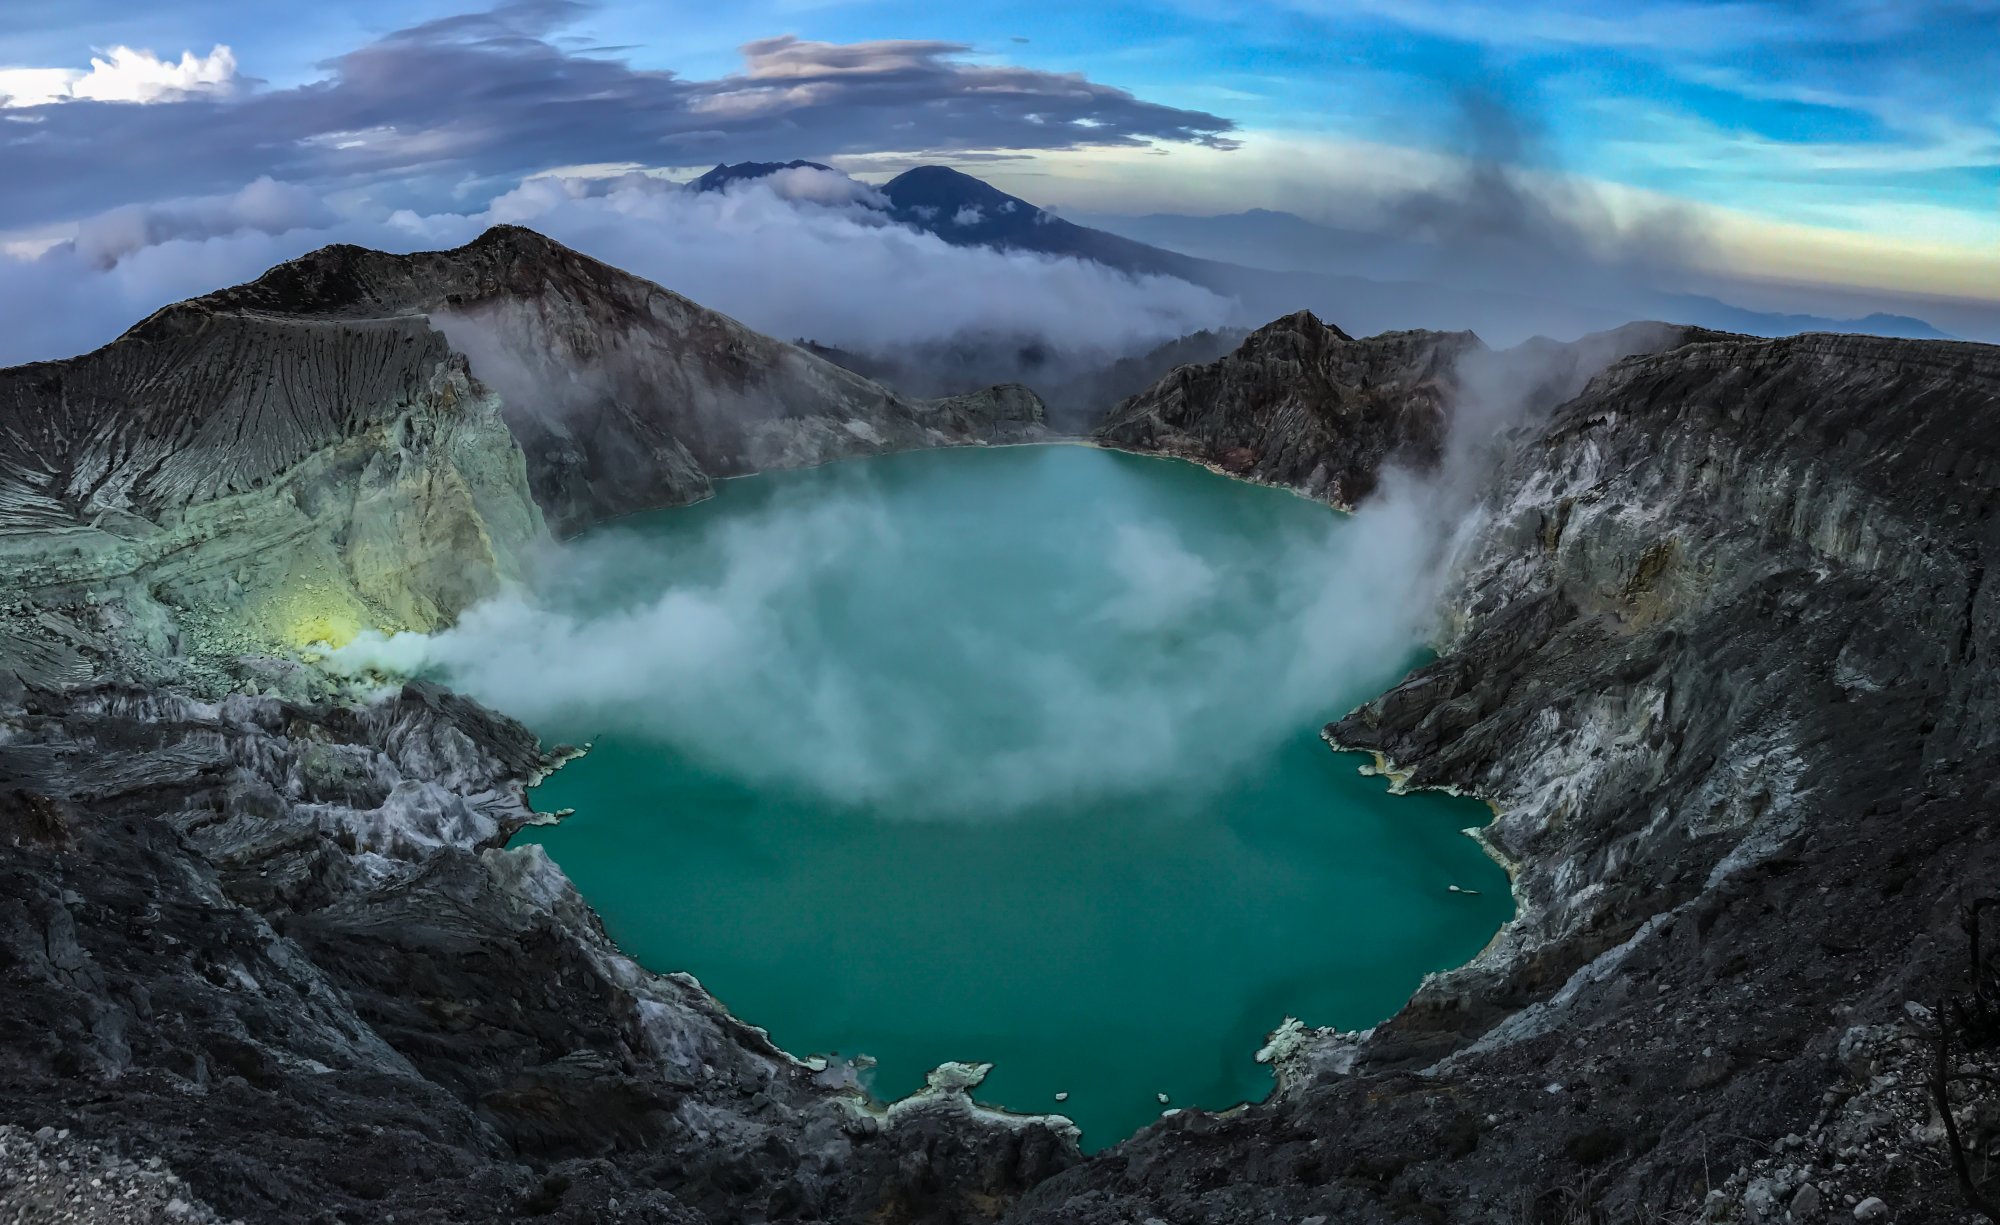 «Βουτιά» θανάτου για τουρίστρια - Πήγε να βγάλει φωτογραφίες σε ηφαίστειο και έπεσε στον κρατήρα